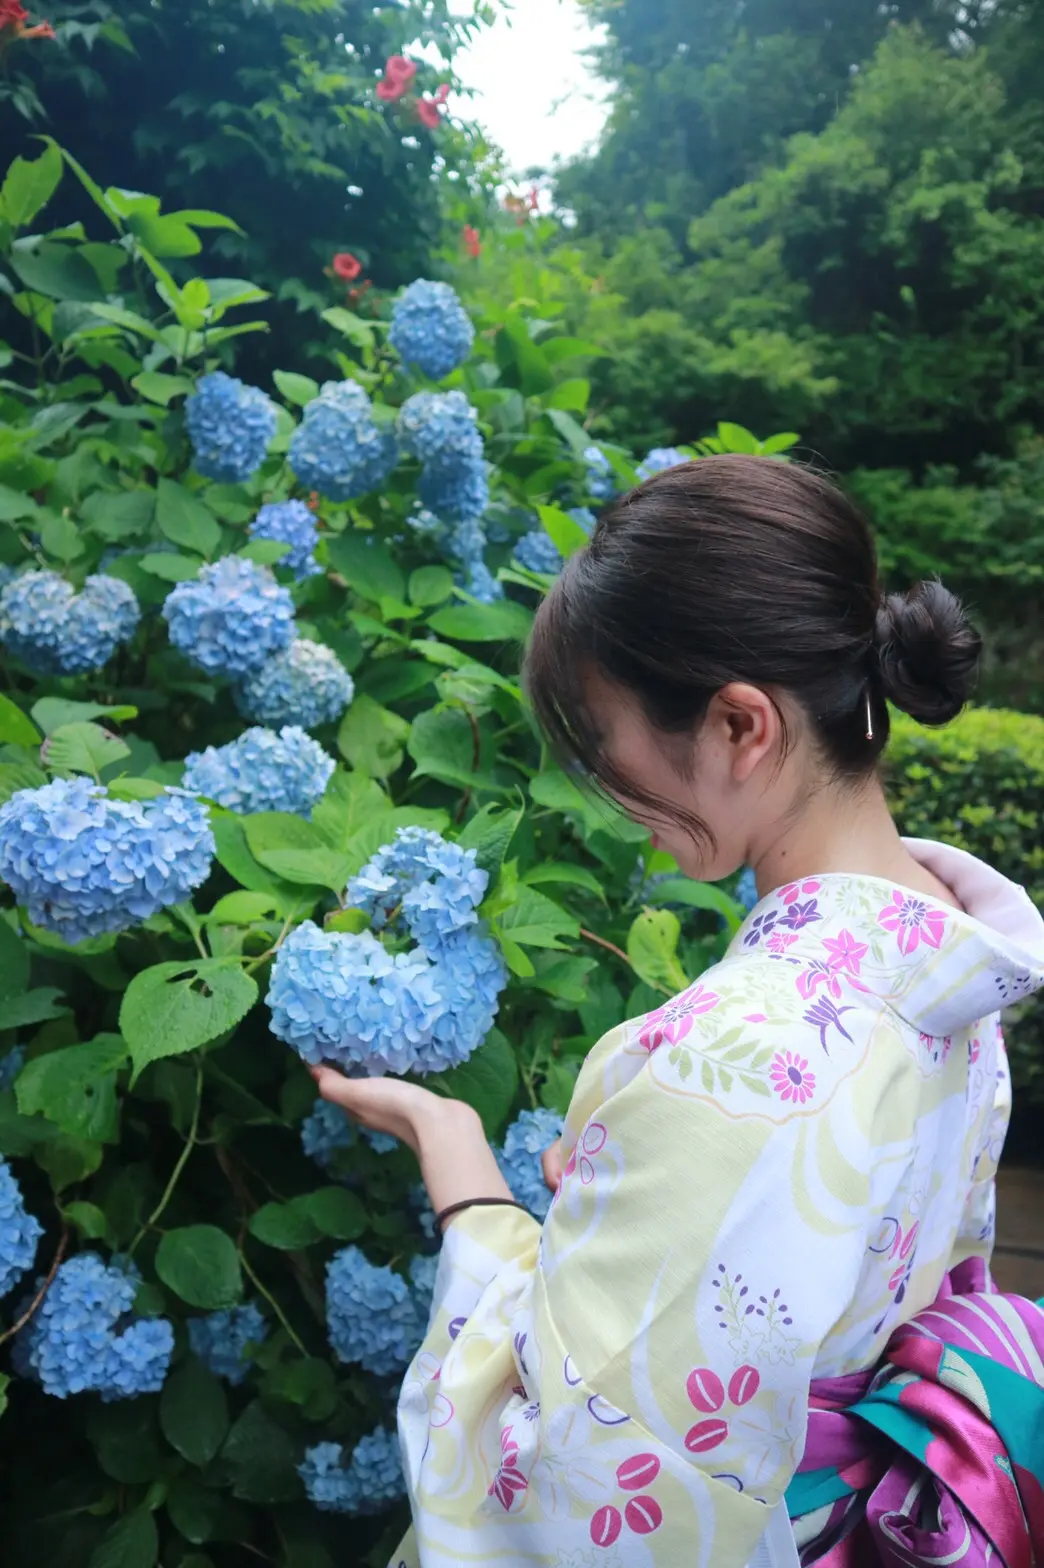 夏着物で鎌倉女子旅 紫陽花がとっても綺麗でした Moreインフルエンサーズブログ Daily More